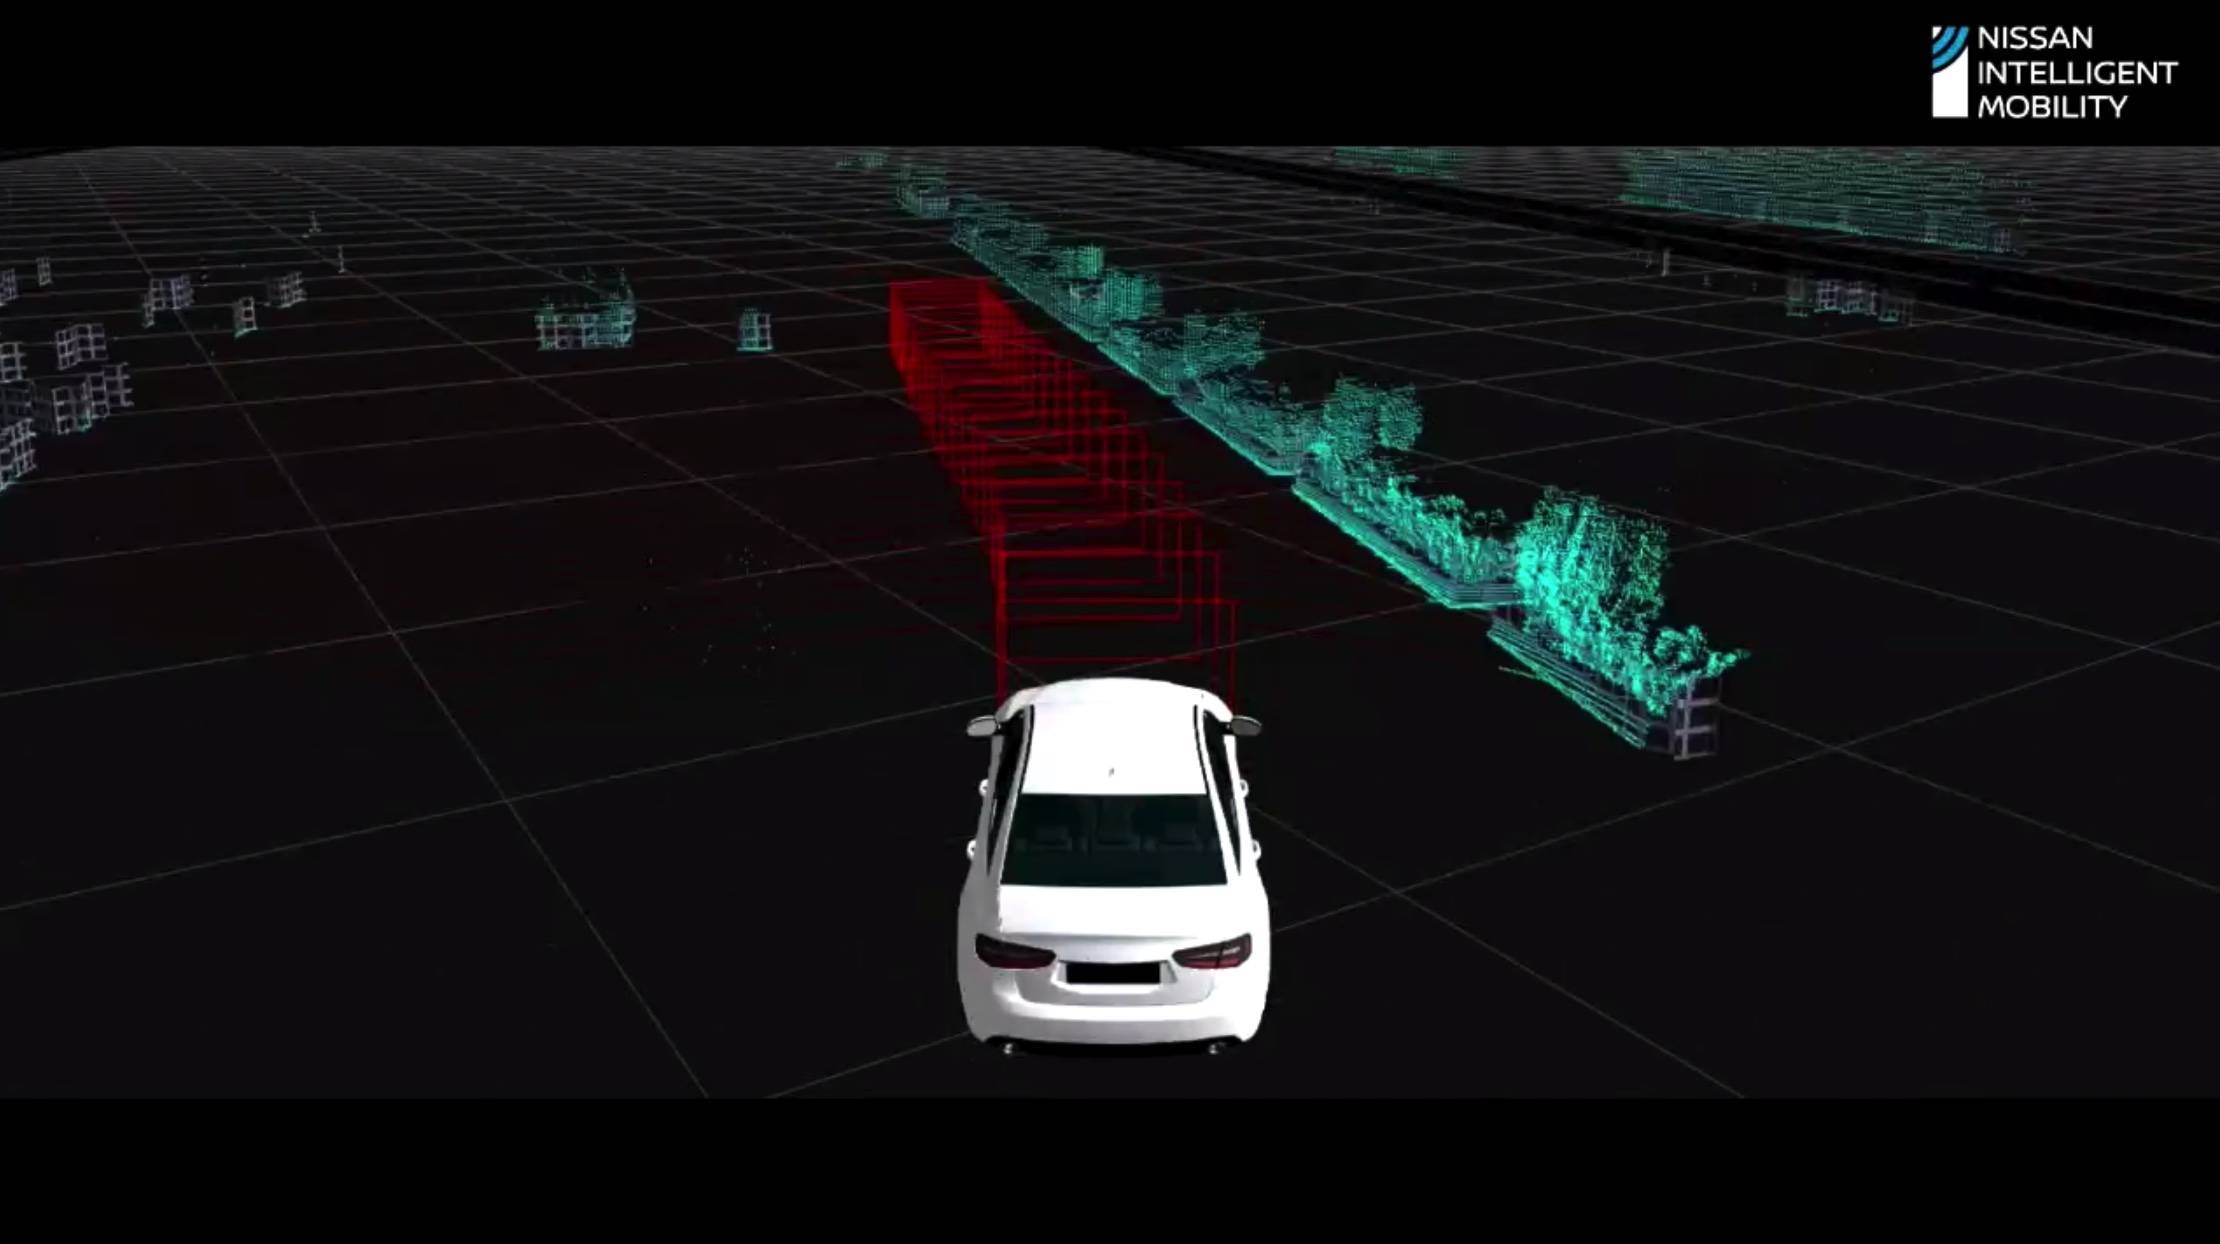 auto2 - Tesla risponde a “Accelerazione automatica a 170 km/h” / Weilai e Xiaopeng sono considerati concorrenti dal pubblico / Il motore rotativo tornerà a Mazda